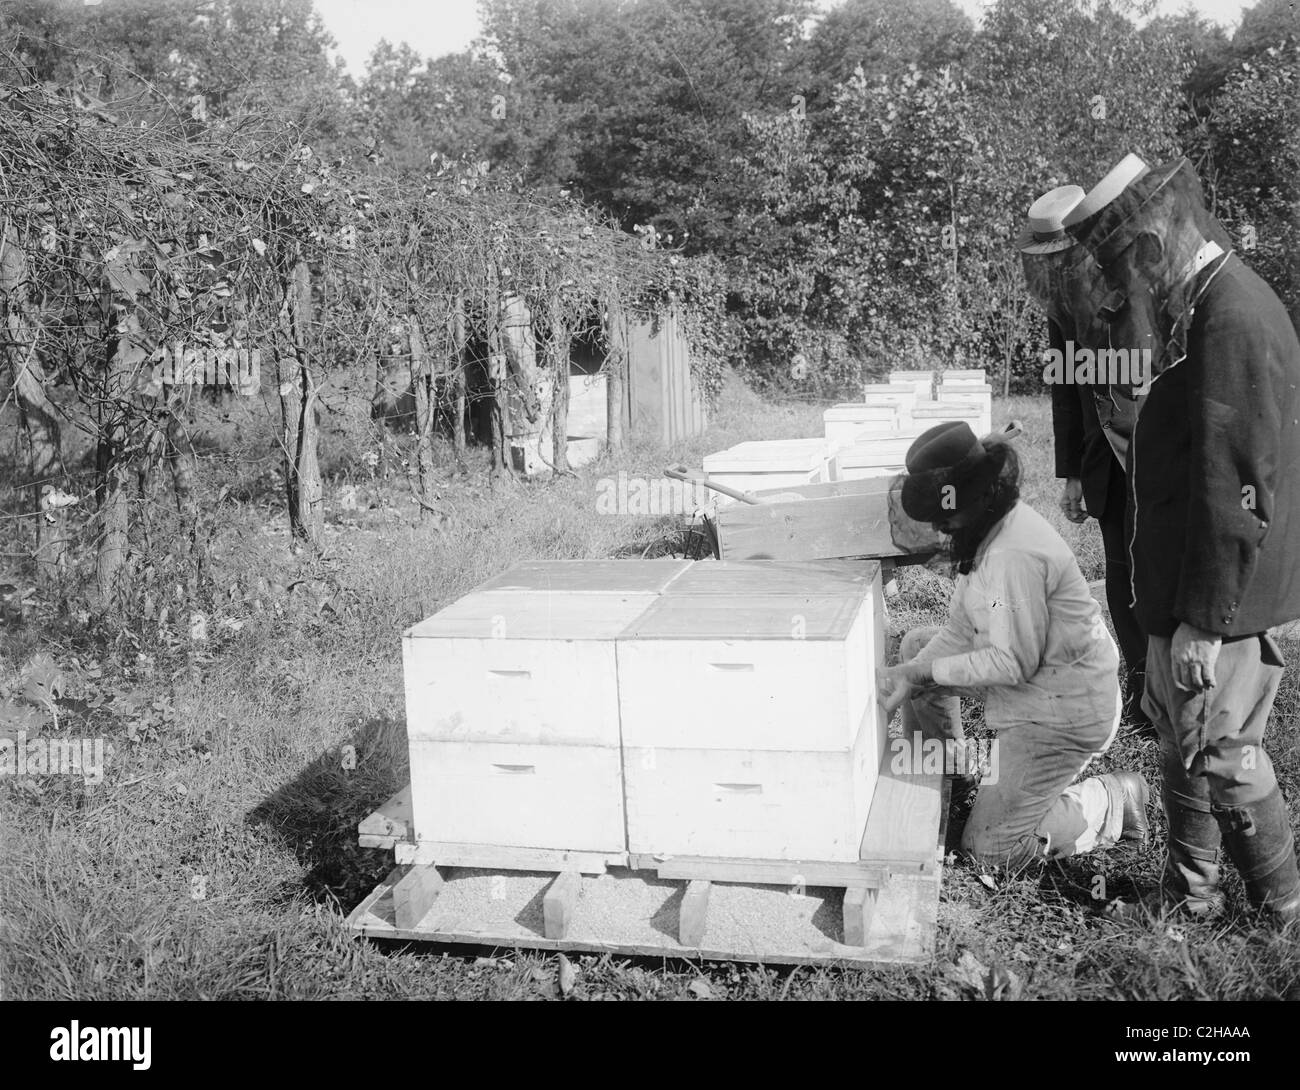 Stockage de l’abeille Banque D'Images